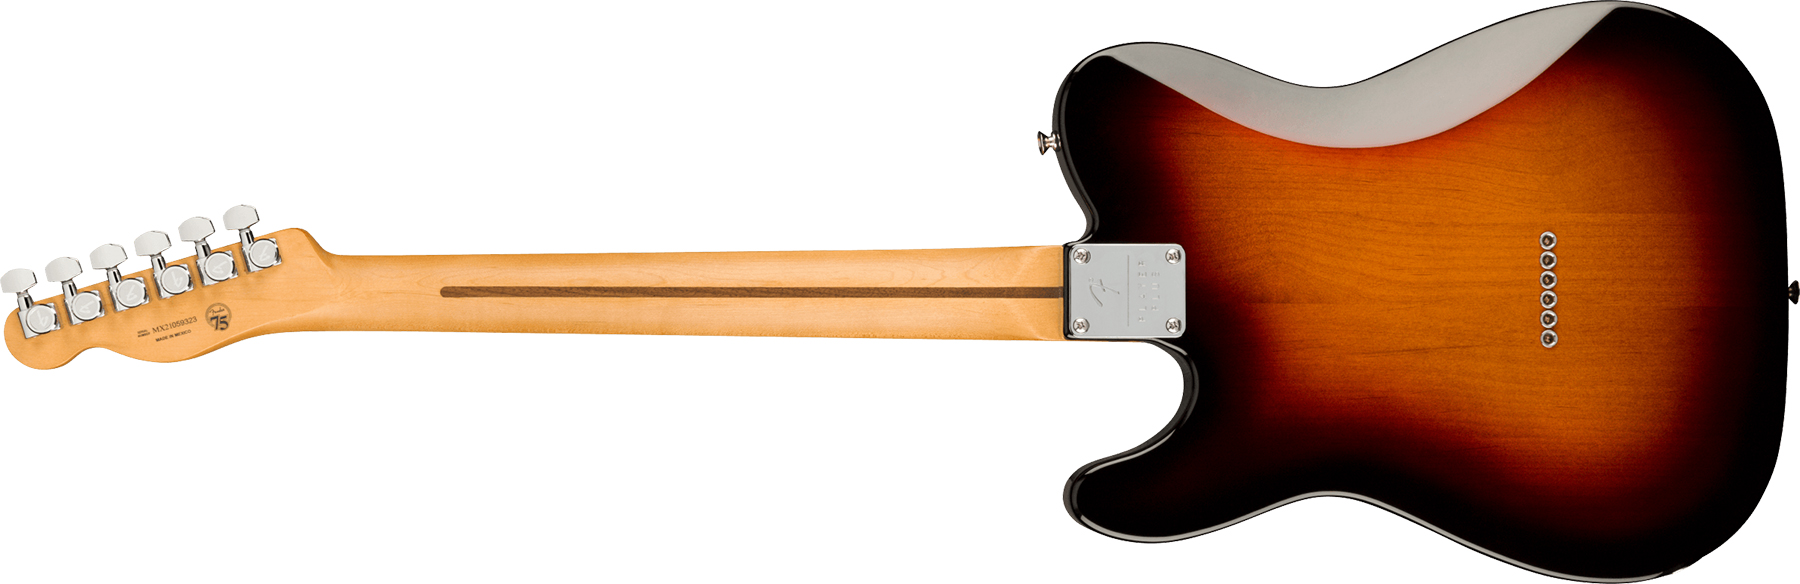 Fender Tele Player Plus Mex 2s Ht Mn - 3-color Sunburst - Guitarra eléctrica con forma de tel - Variation 1